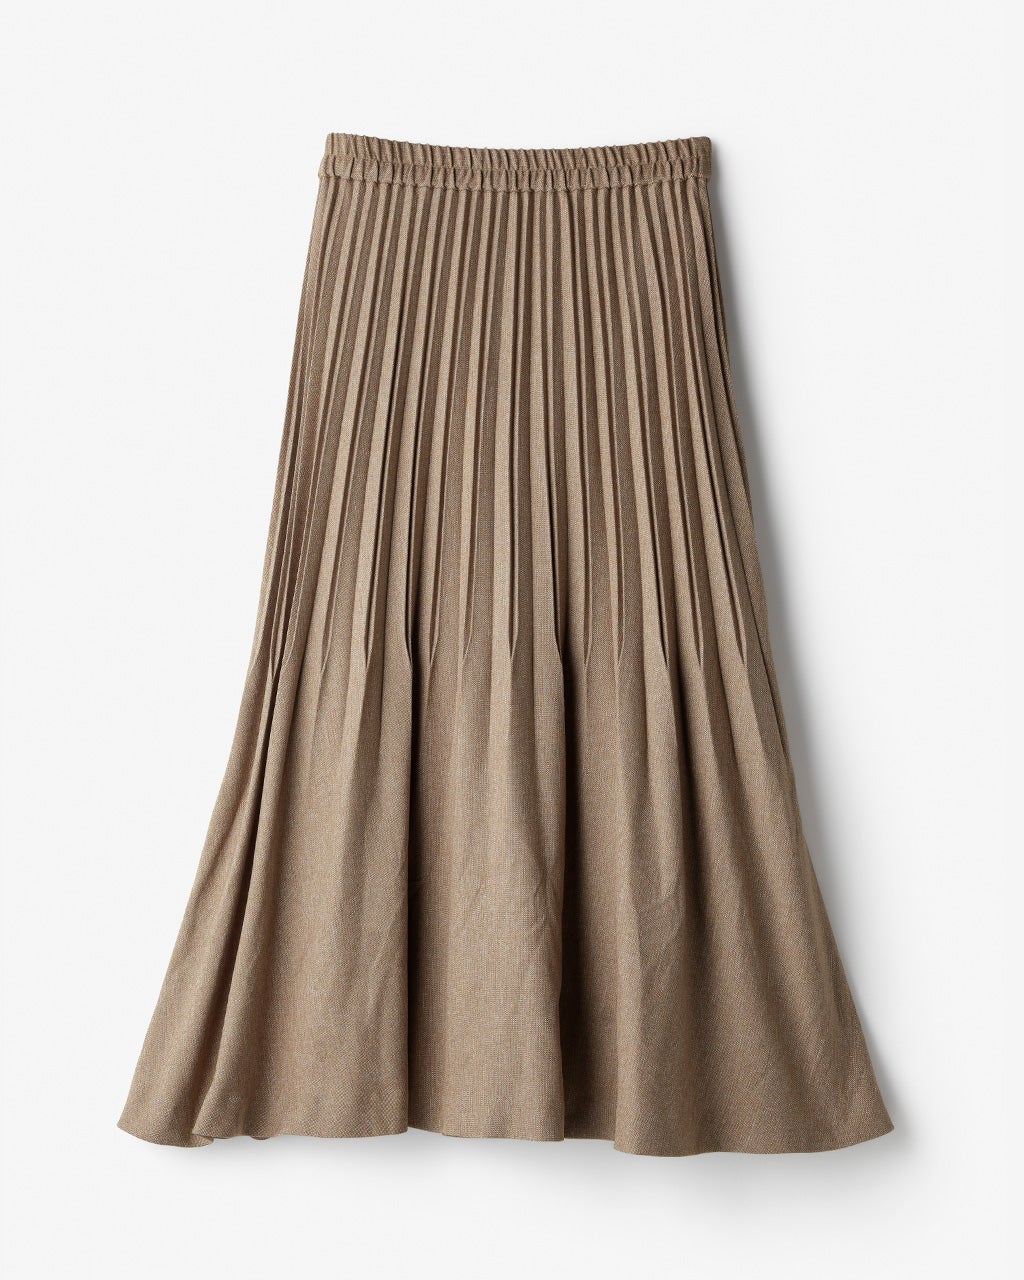 ウールライク・裾消しプリーツスカート/40代50代からのレディース 